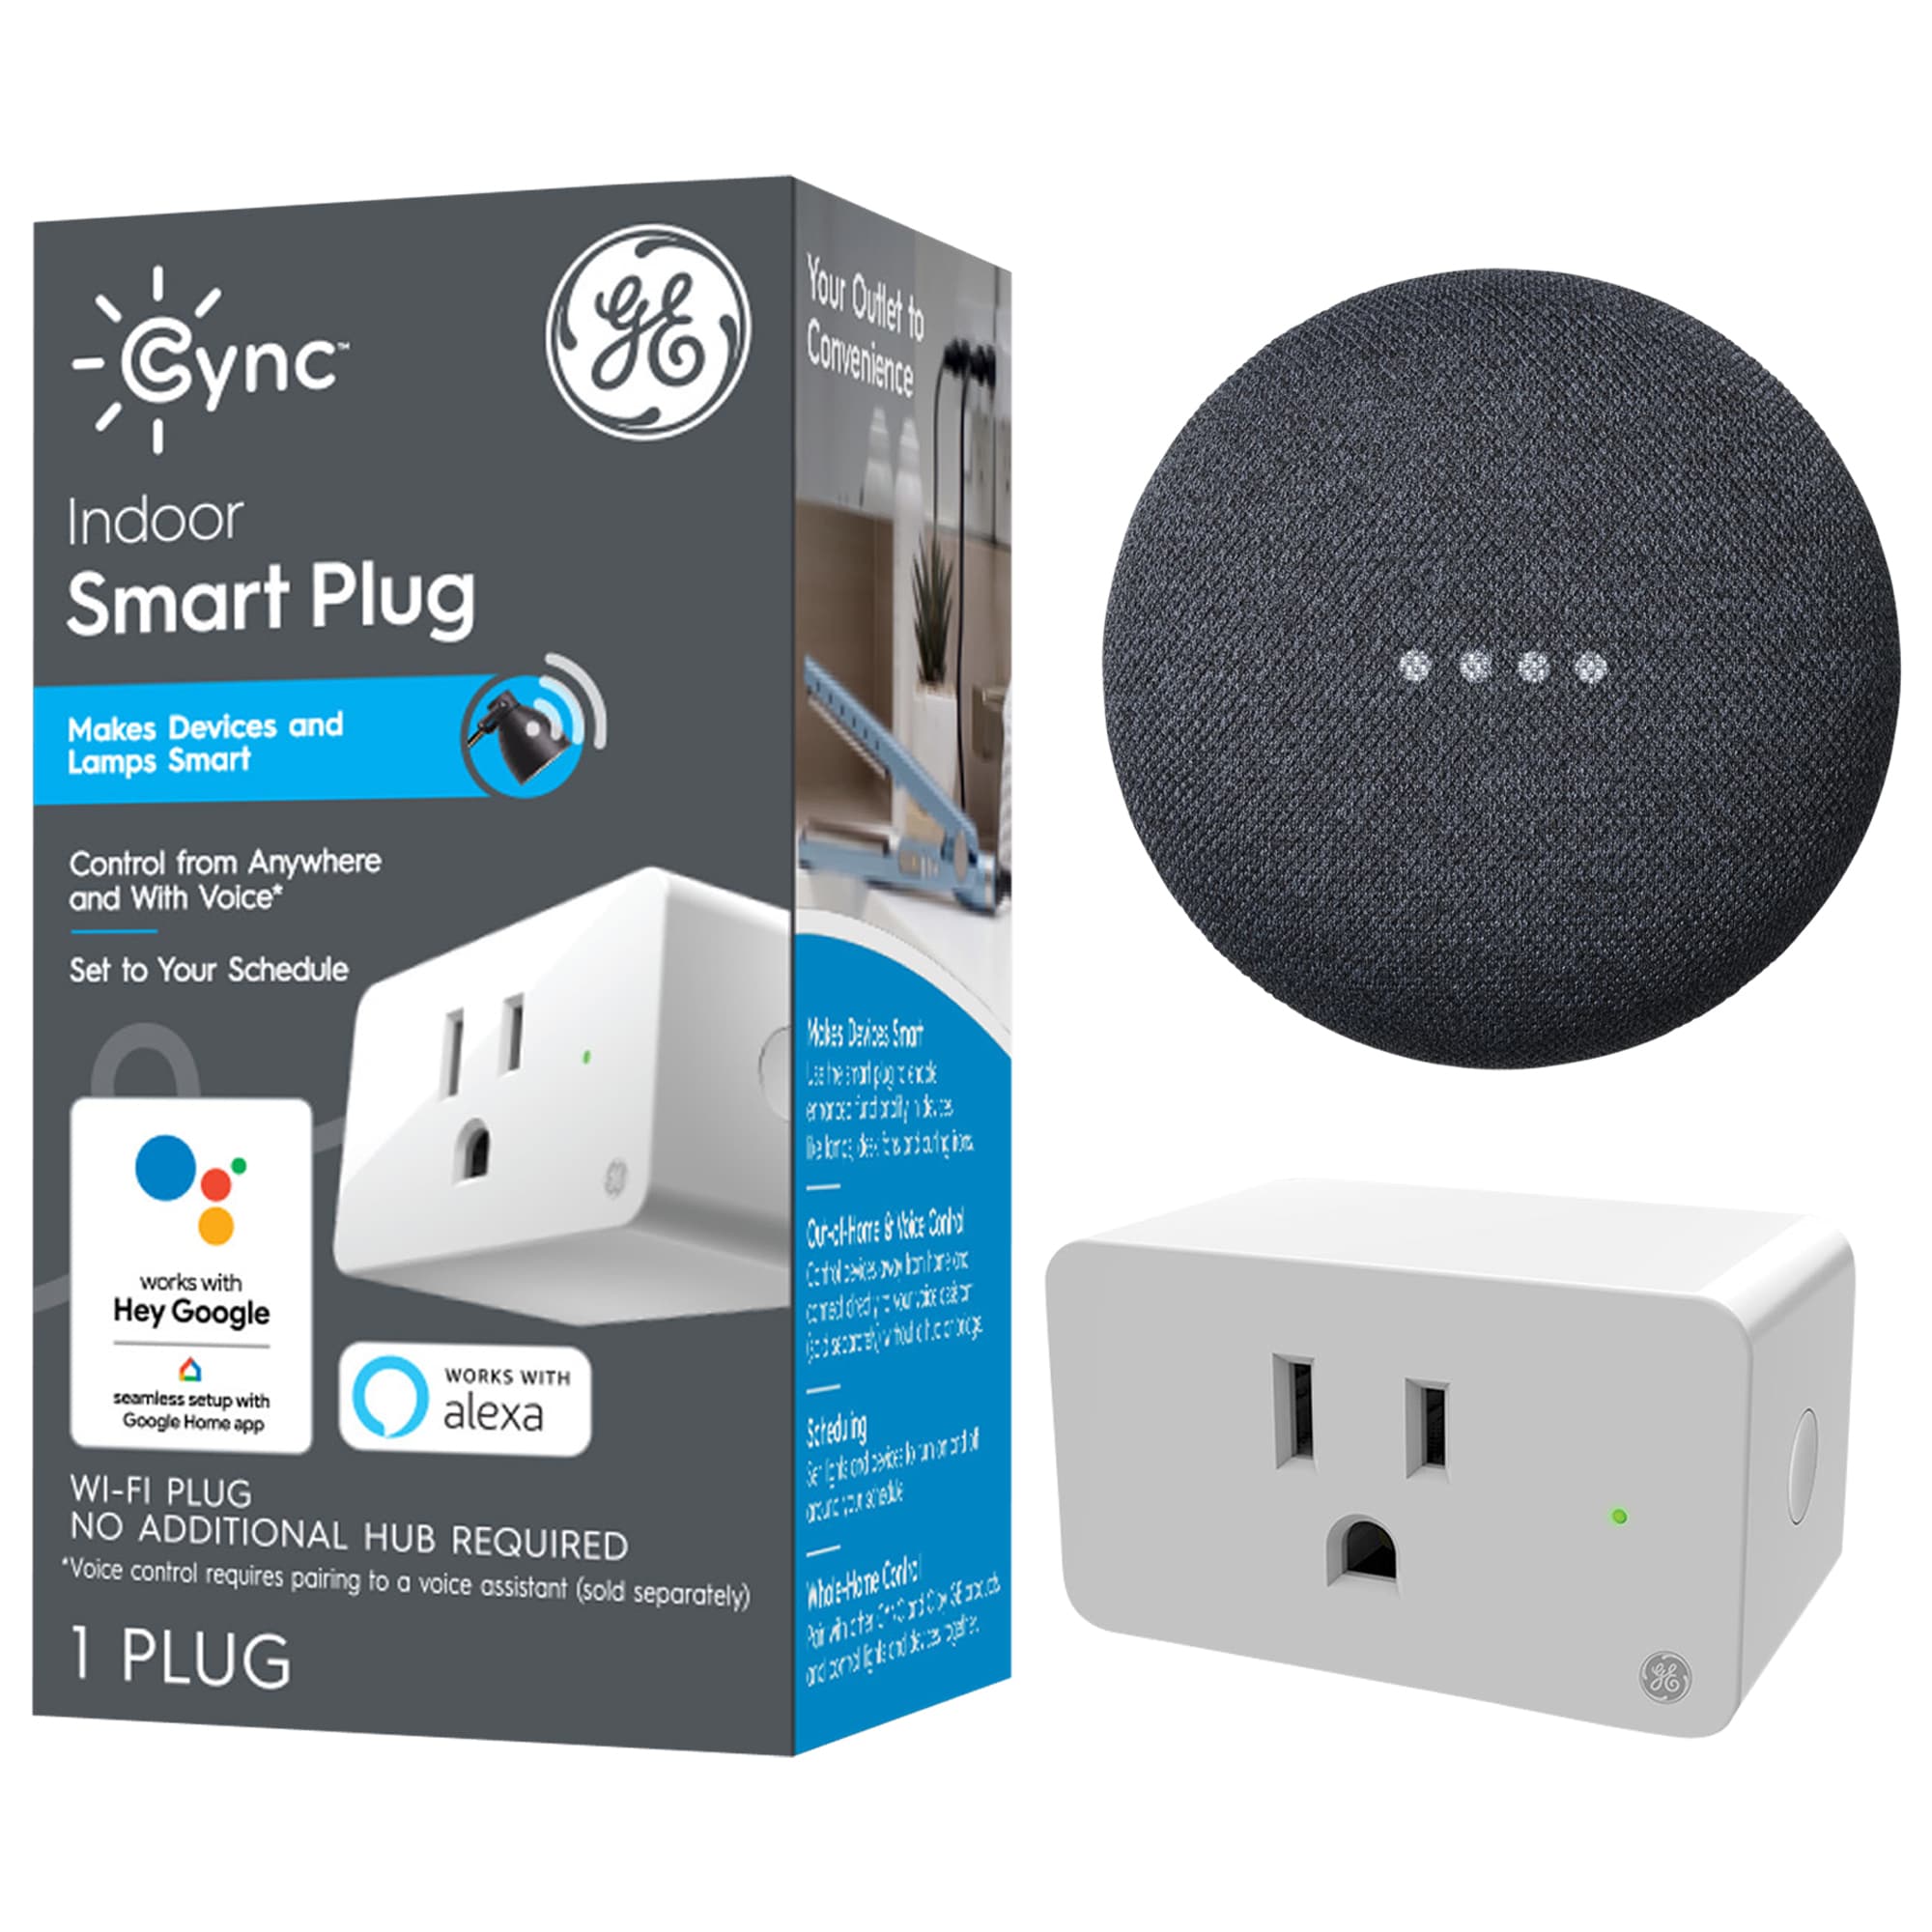 Ge Cync Smart Plug, Indoor